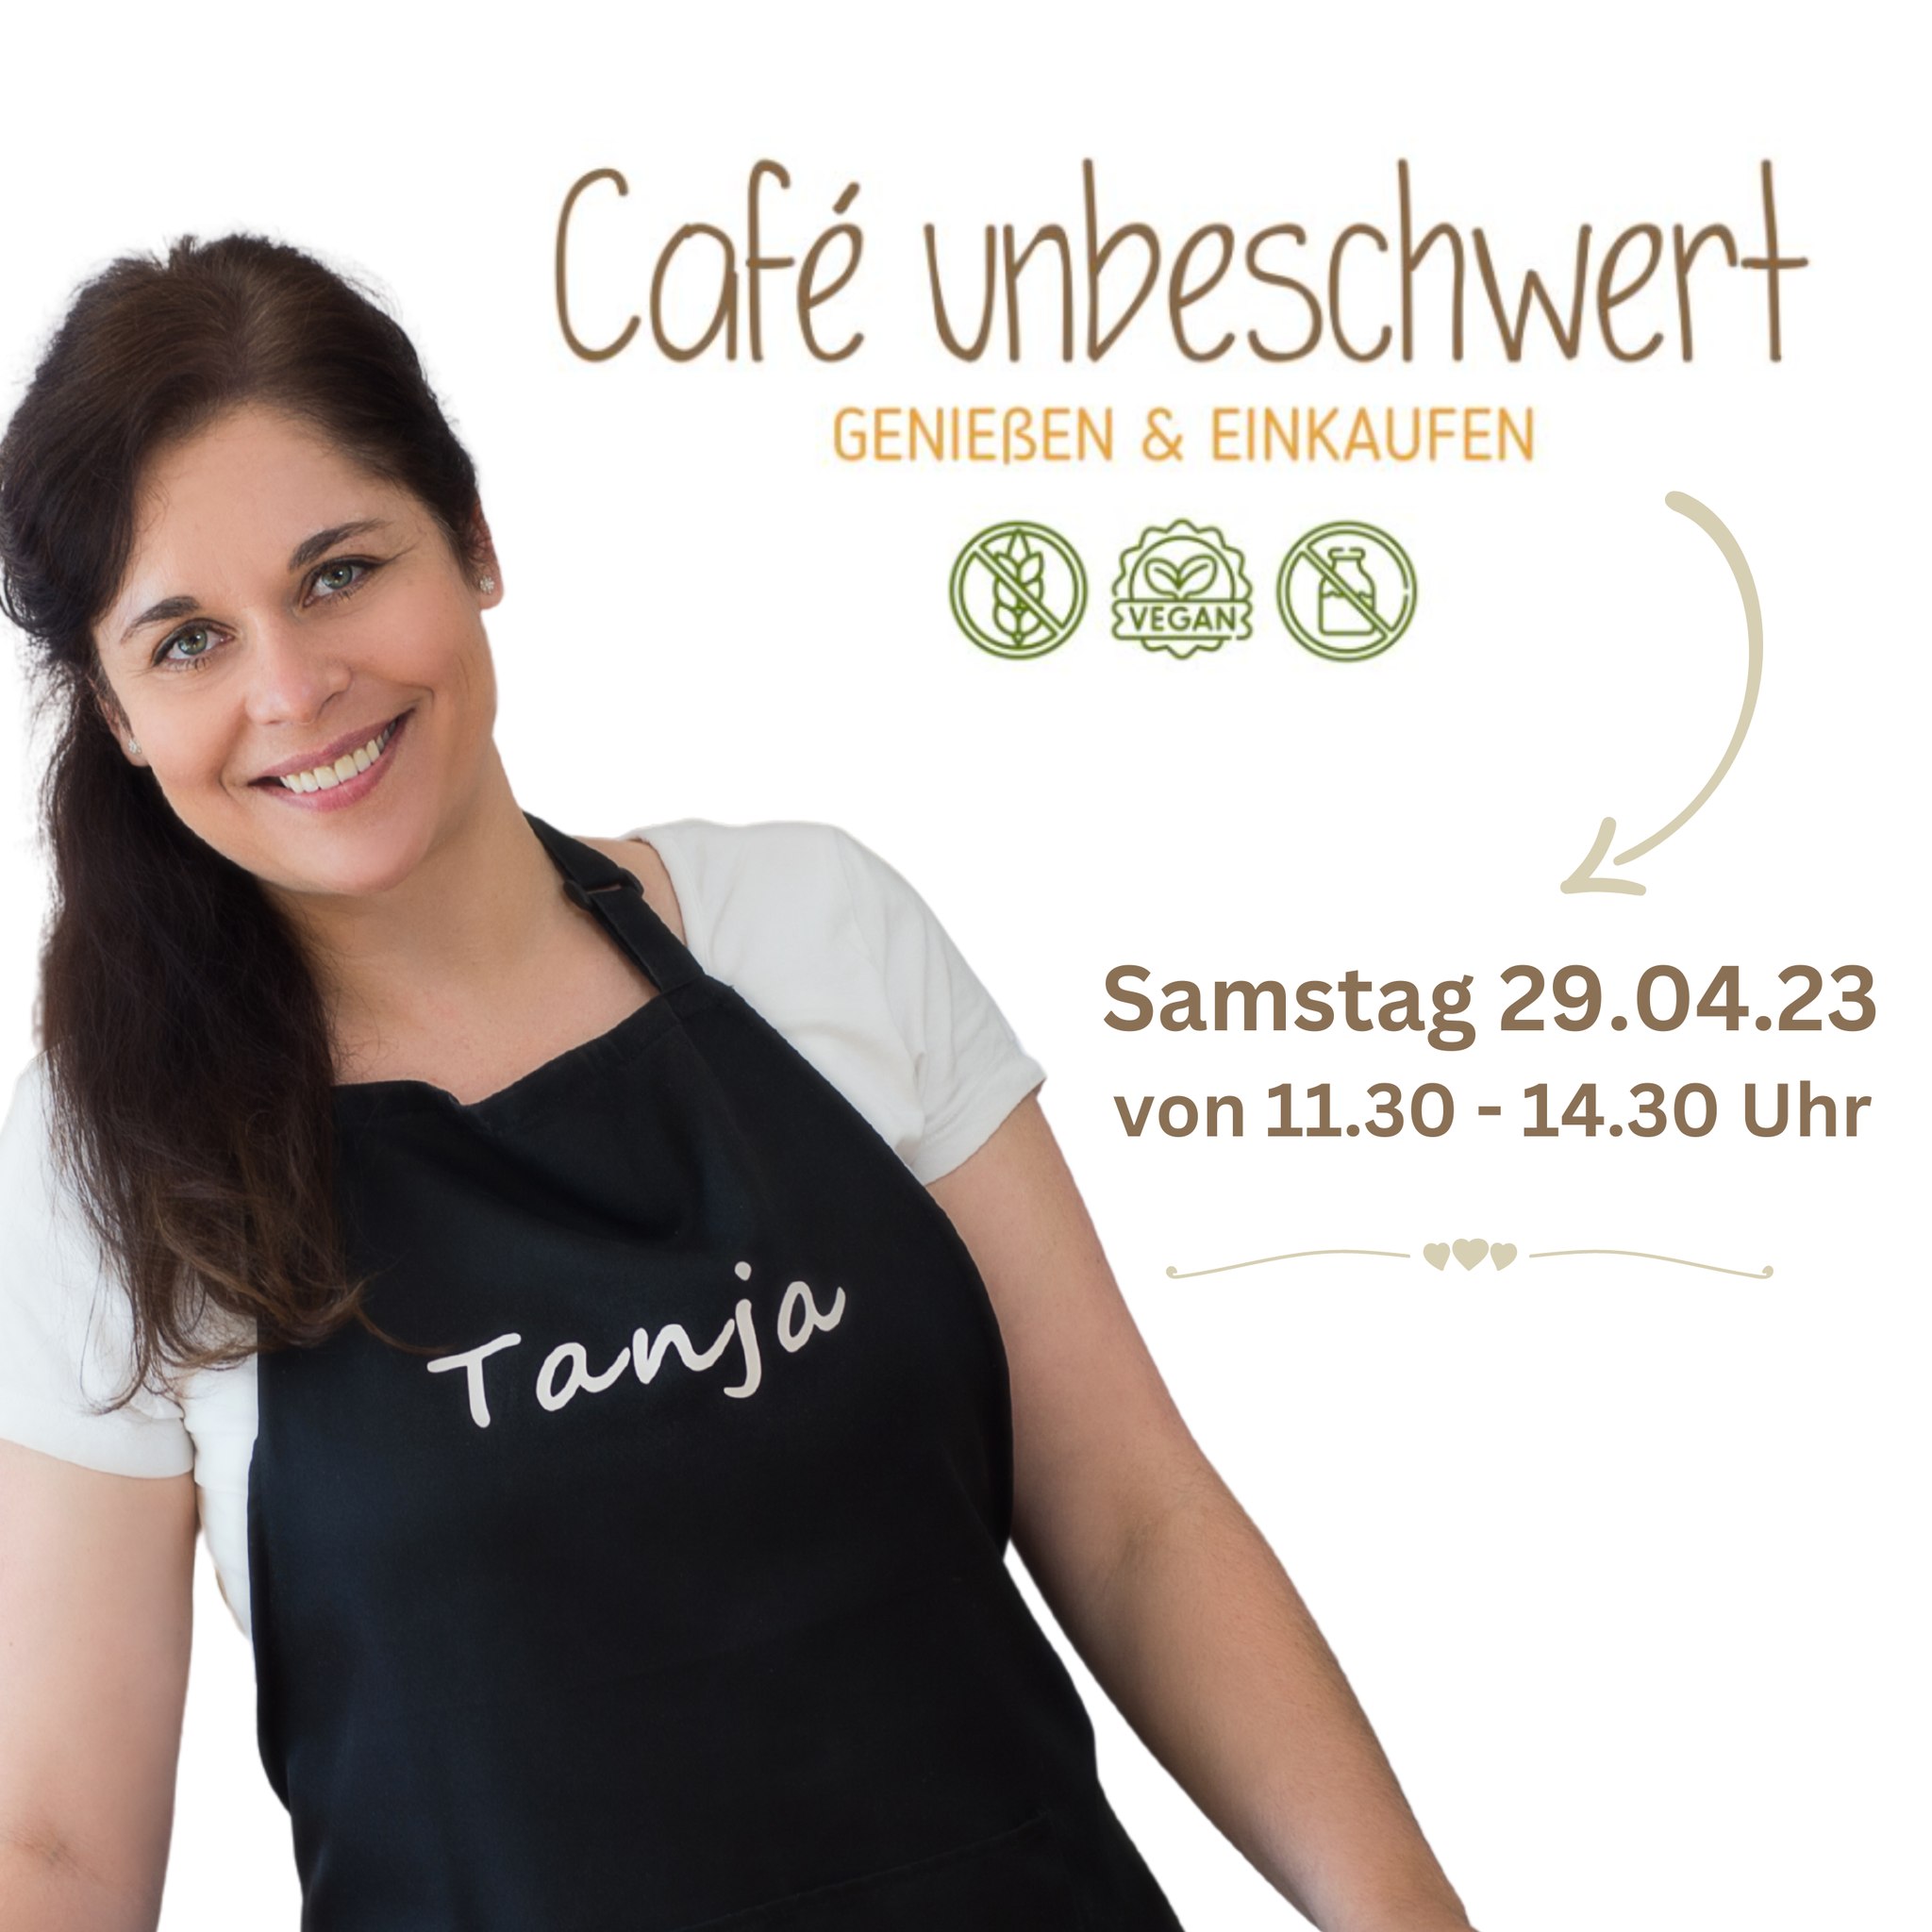 Veranstaltung Tanja Gruber im Cafe Unbeschwert